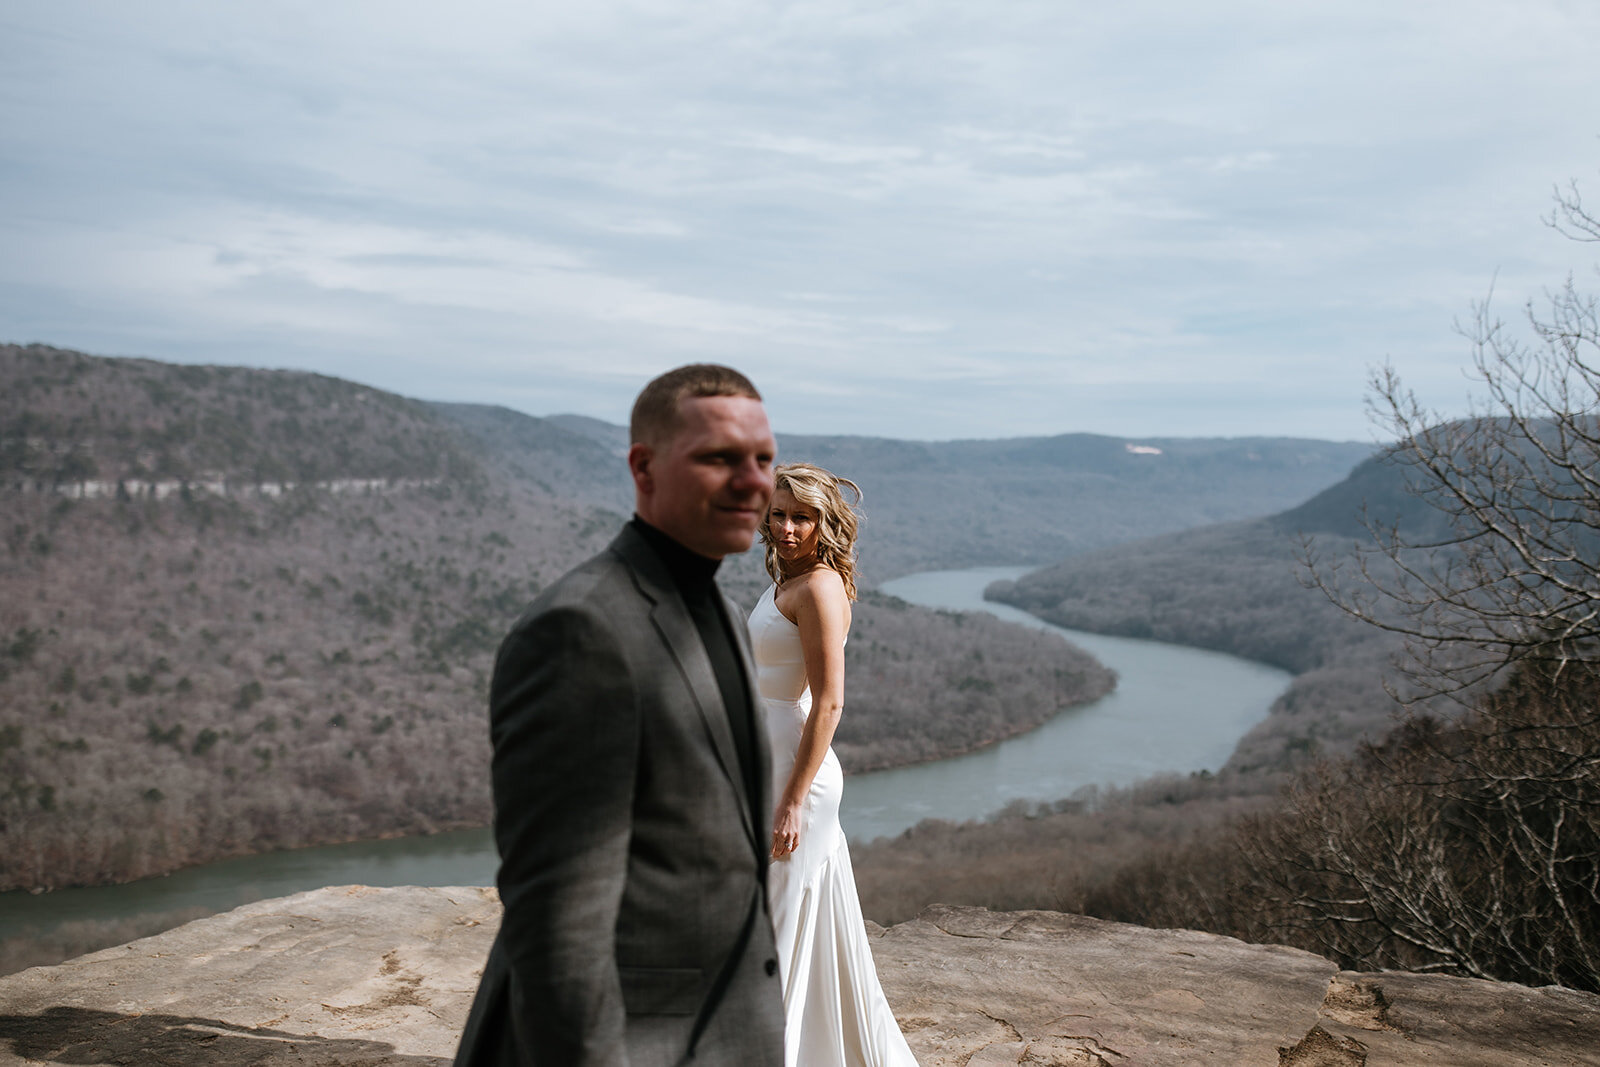 snoopers-rock-adventure-elopement-chattanooga-wedding-photographerfoster-falls-elopement-chattanooga-wedding-photographer-422_websize.jpg